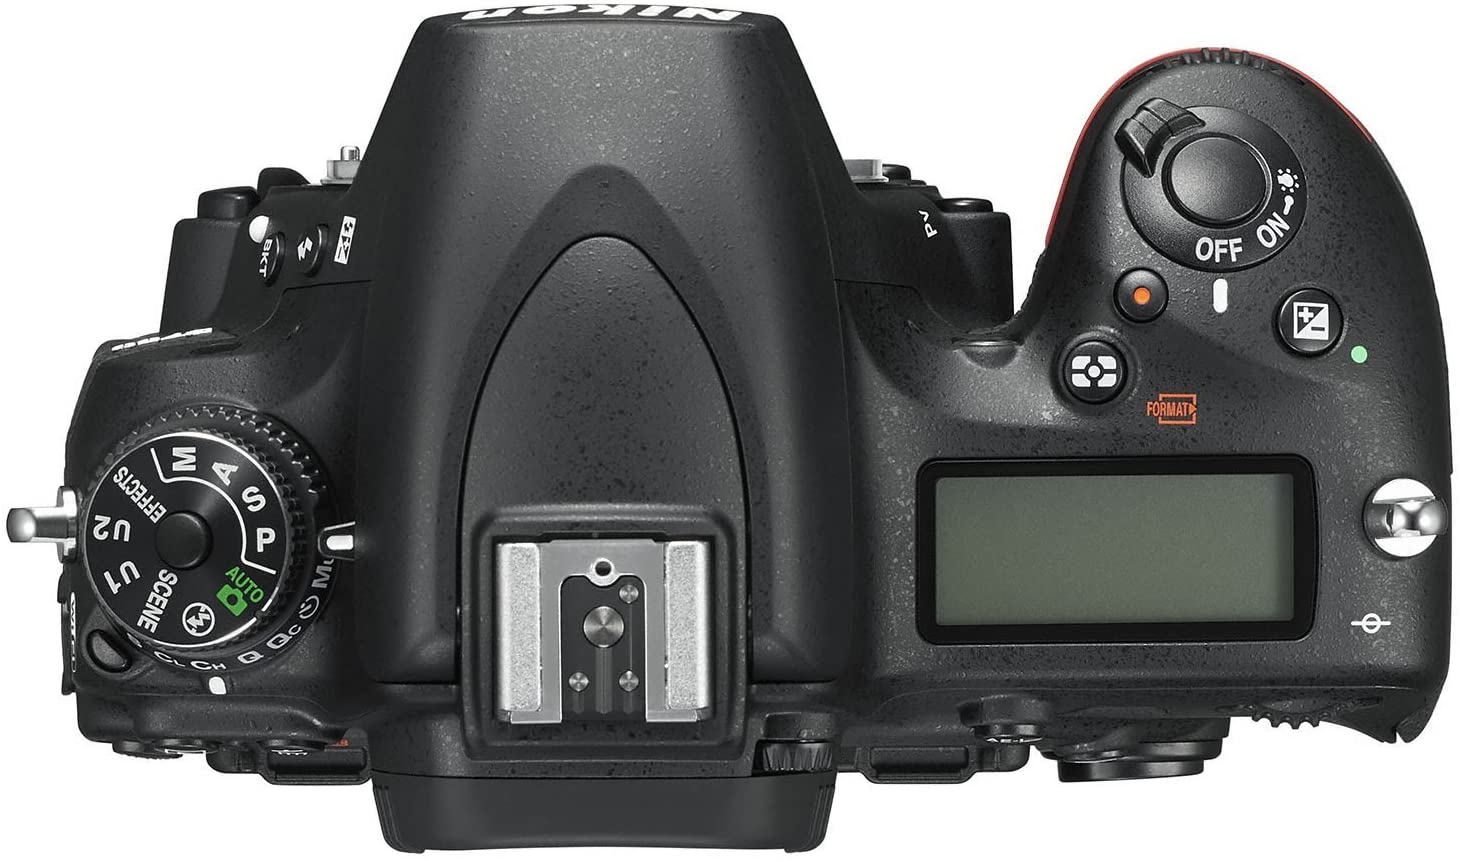 Nikon D750 - Camera